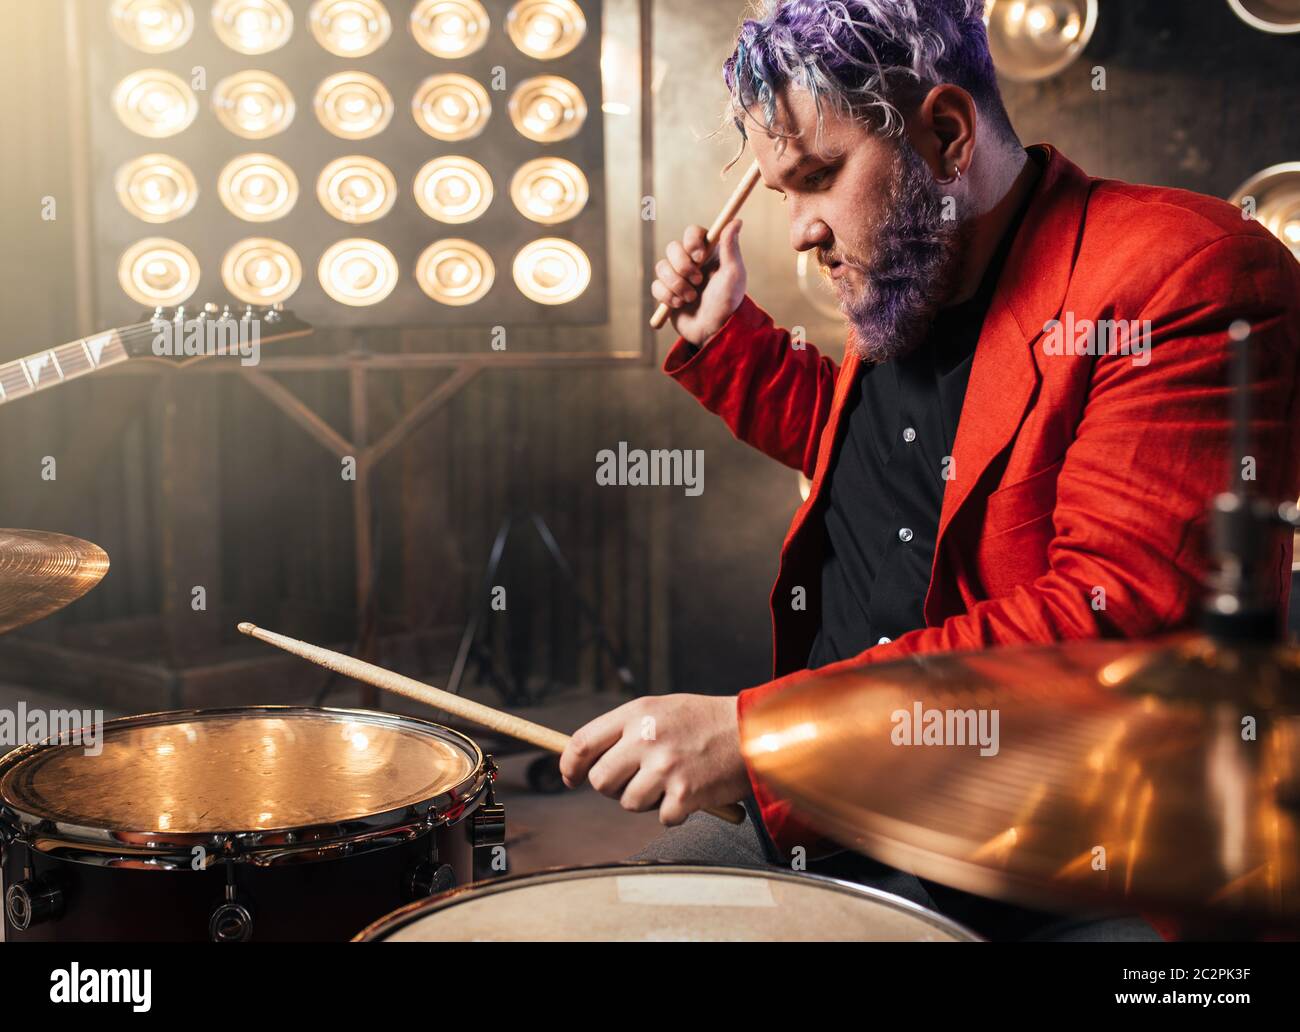 Batterista barbuto in tuta rossa ad esibirsi sul palco con luci, in stile retrò. Esecutore musicale con i capelli colorati, strumento drum Foto Stock